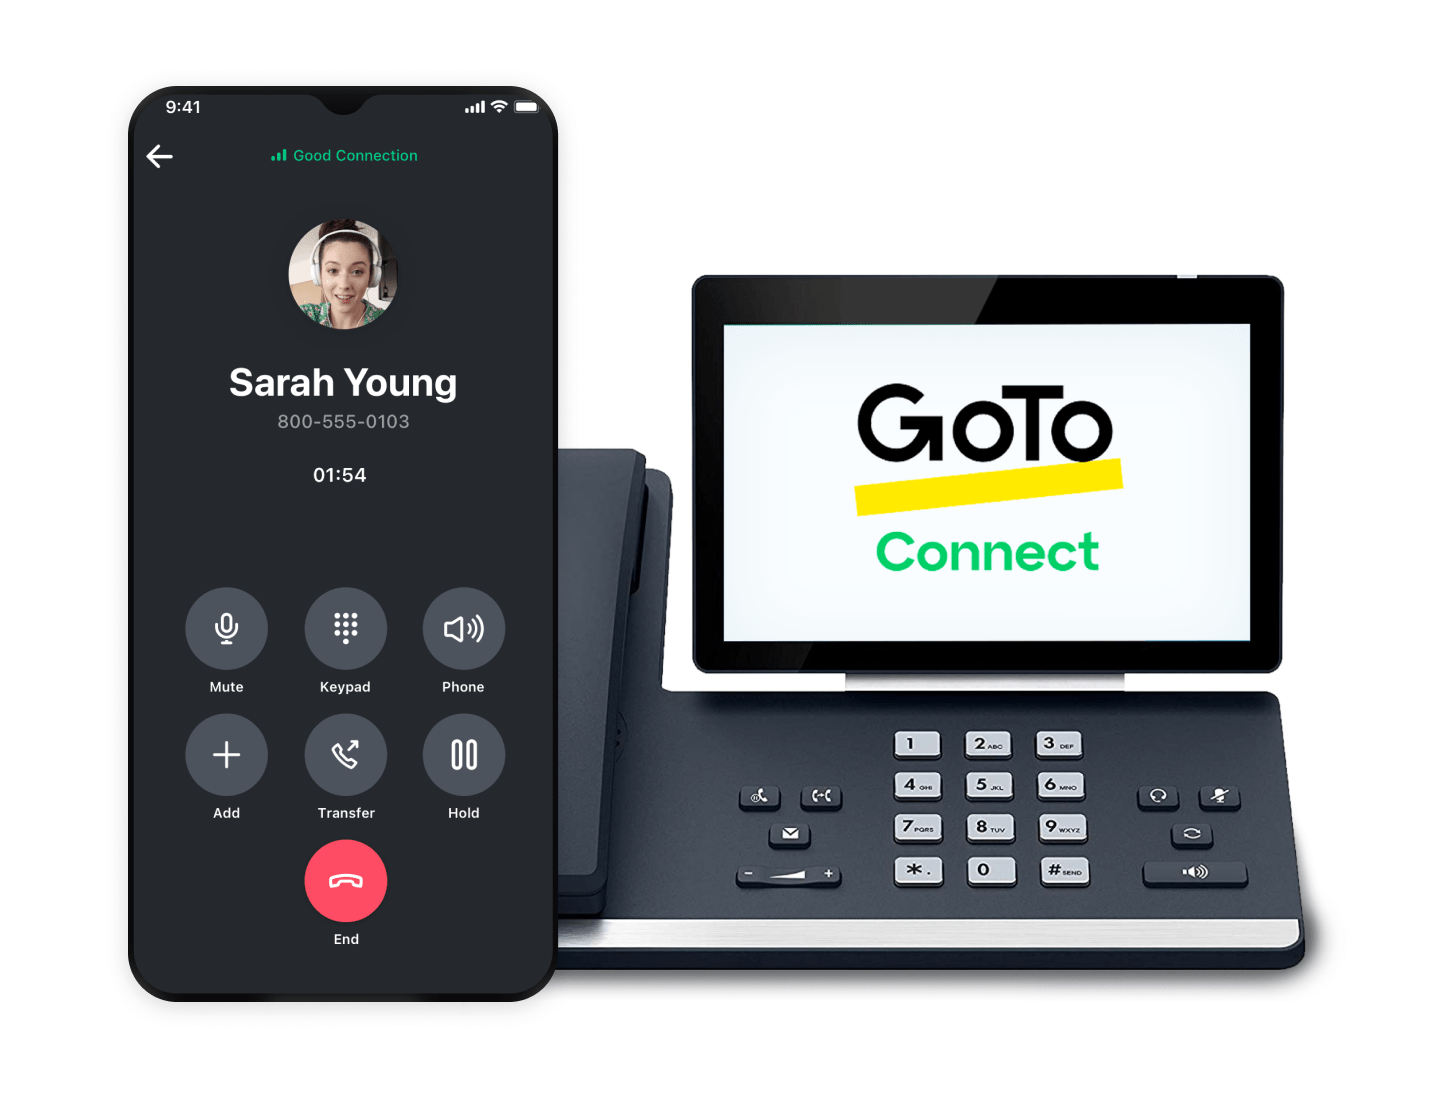 Caricamento di un video su GoTo Connect utilizzando un telefono fisso con touchscreen